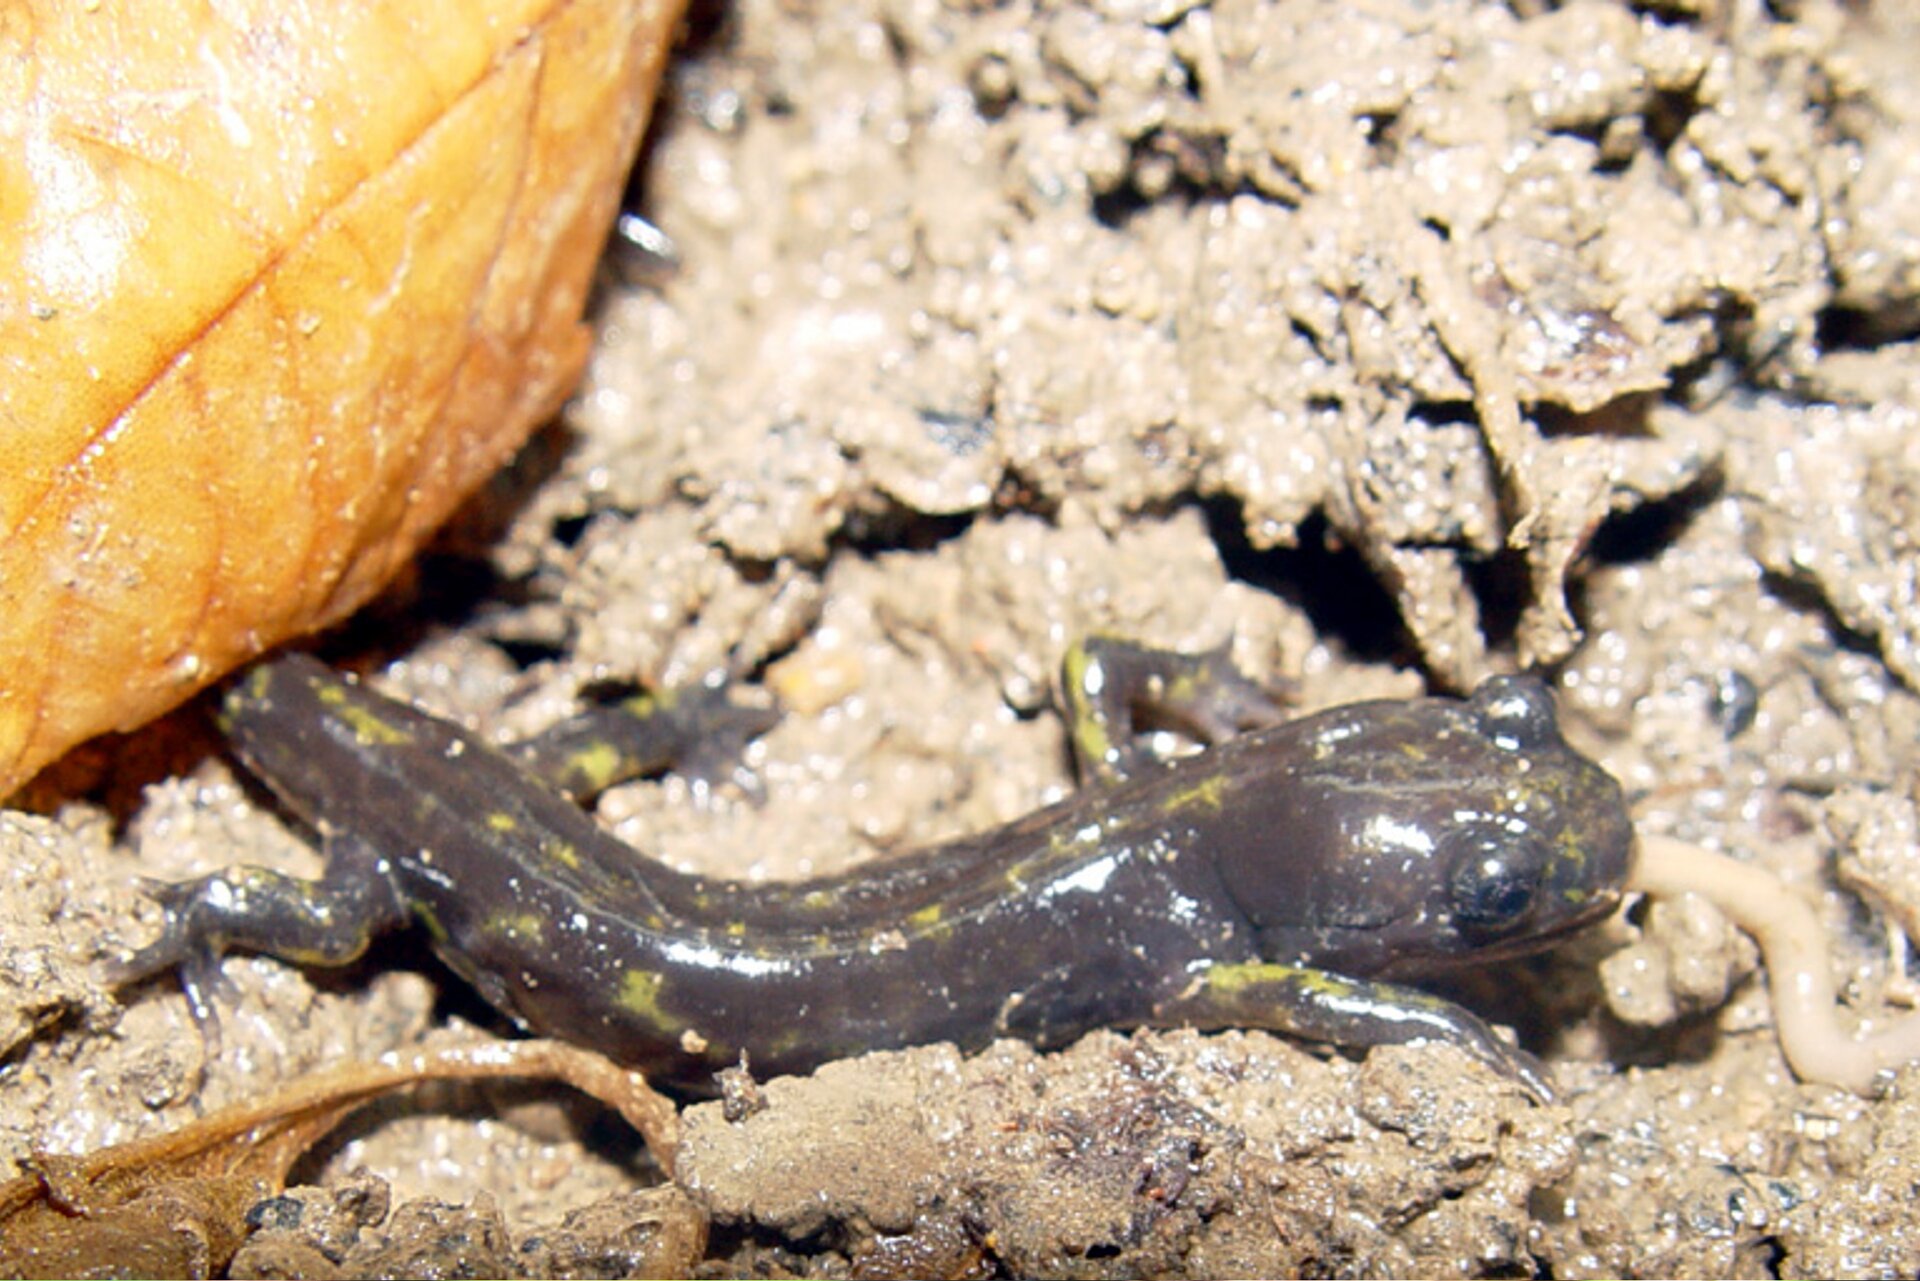 Ilustracja przedstawia salamandrę gruzińską siedzącą na błotnym podłożu. Salamandra ma ciało nakrapiane żółtymi kropkami.